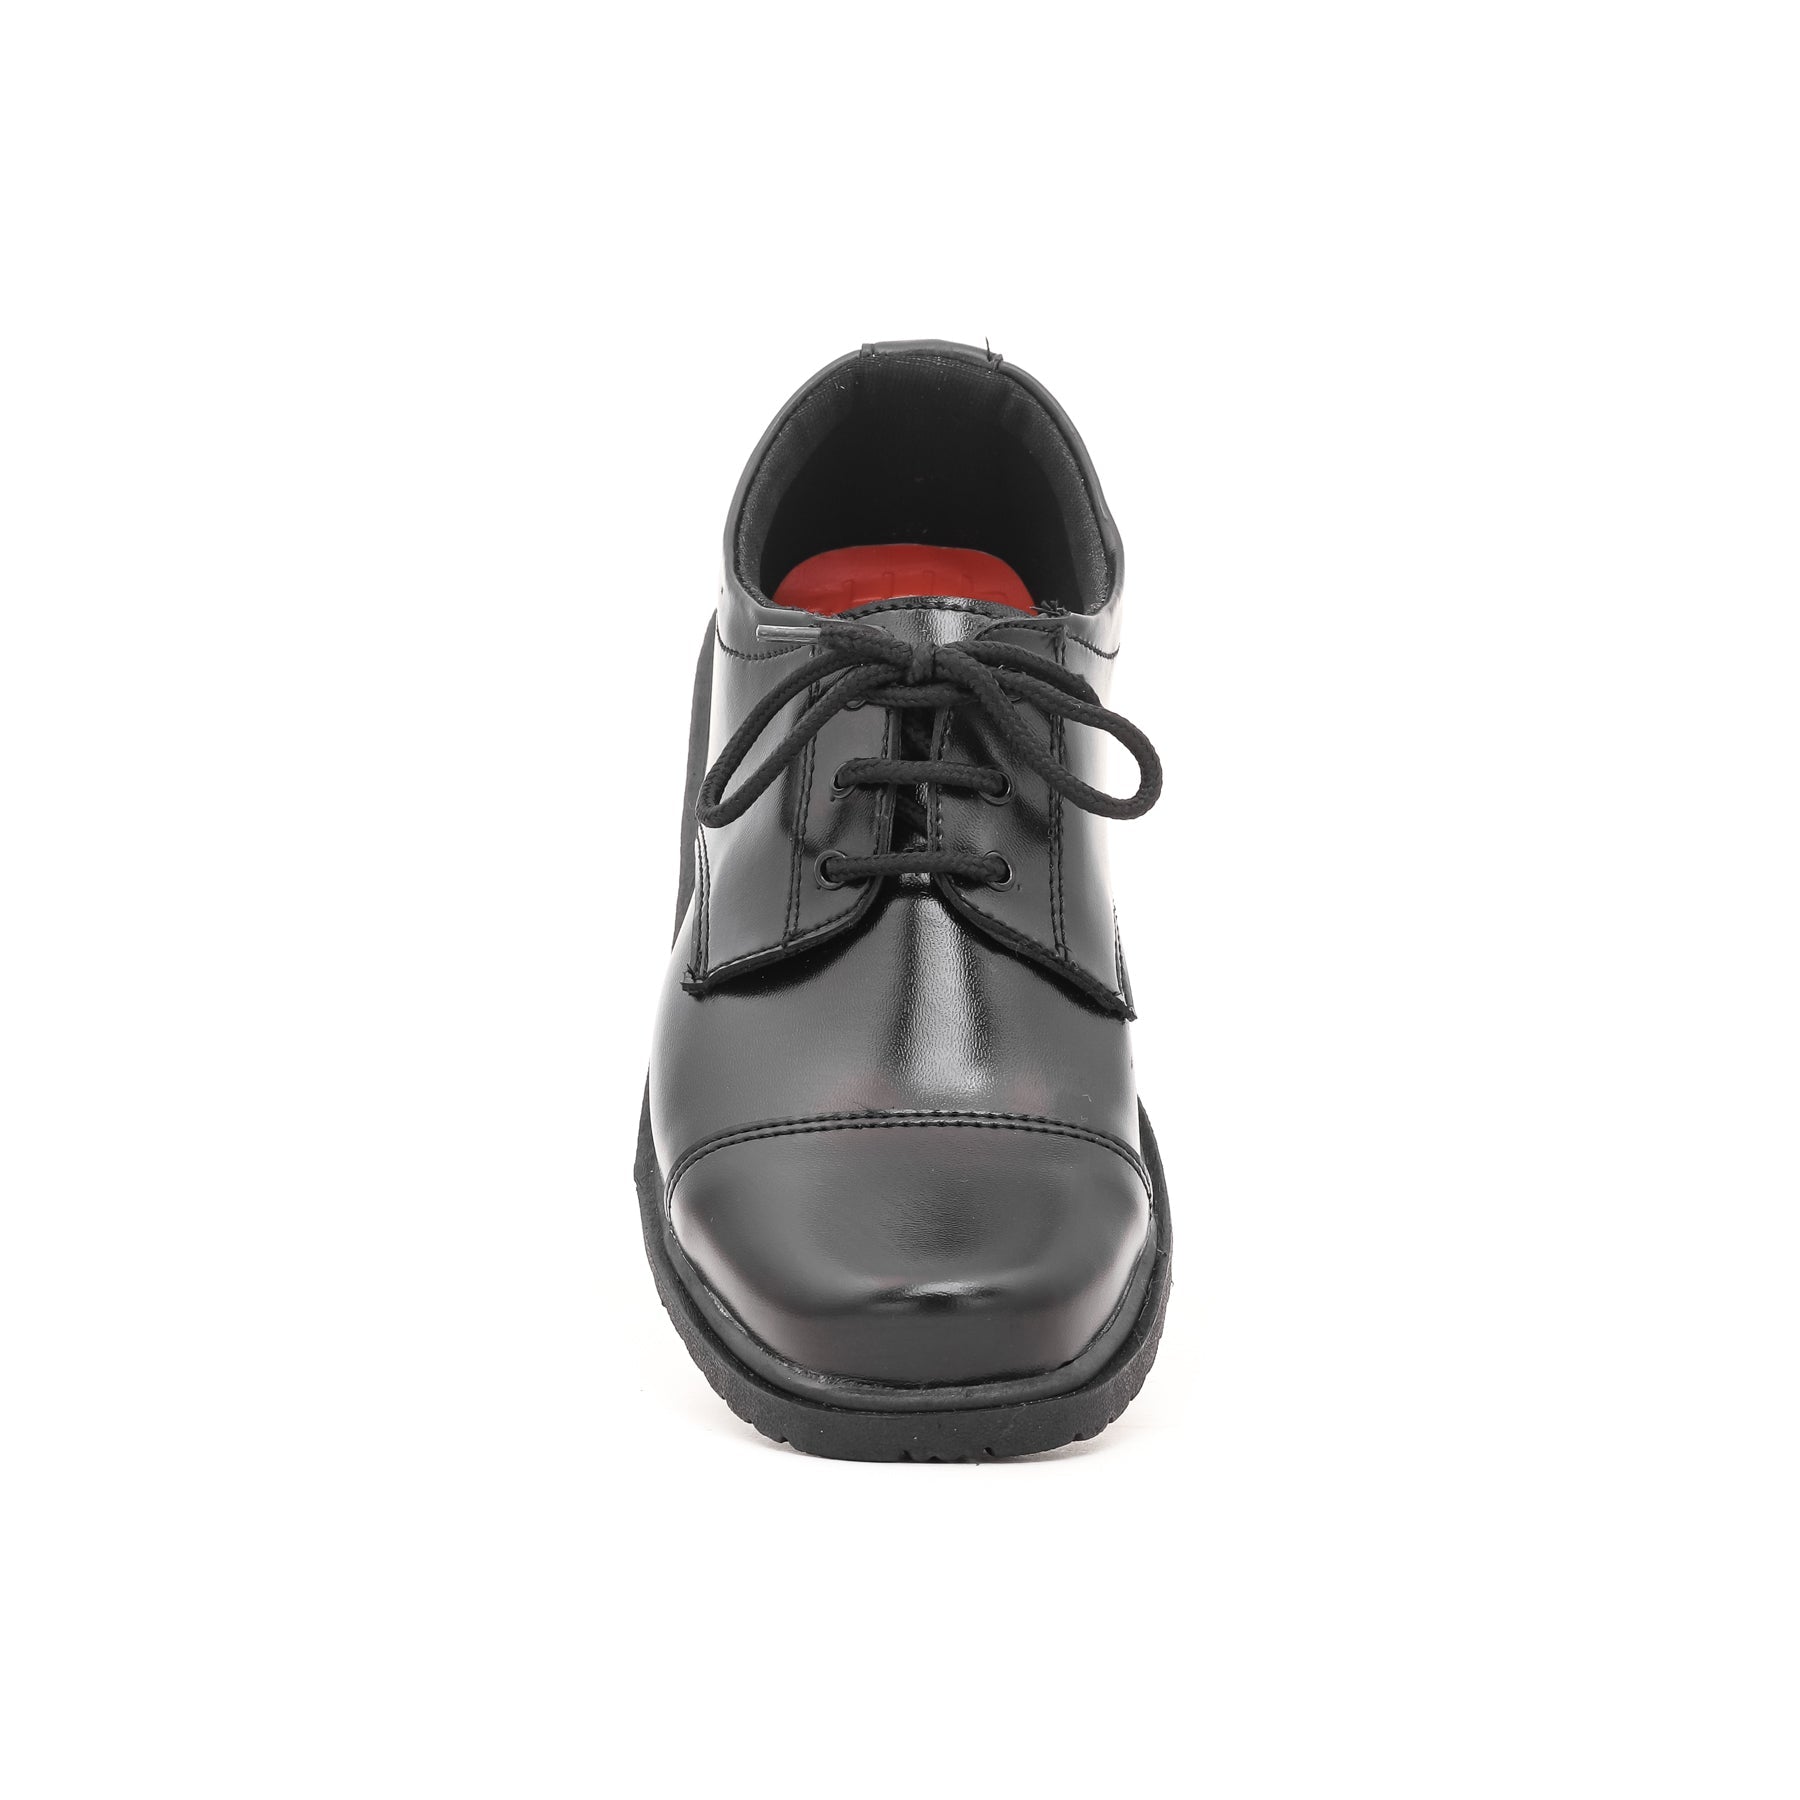 Boys Black School Shoes SK1046